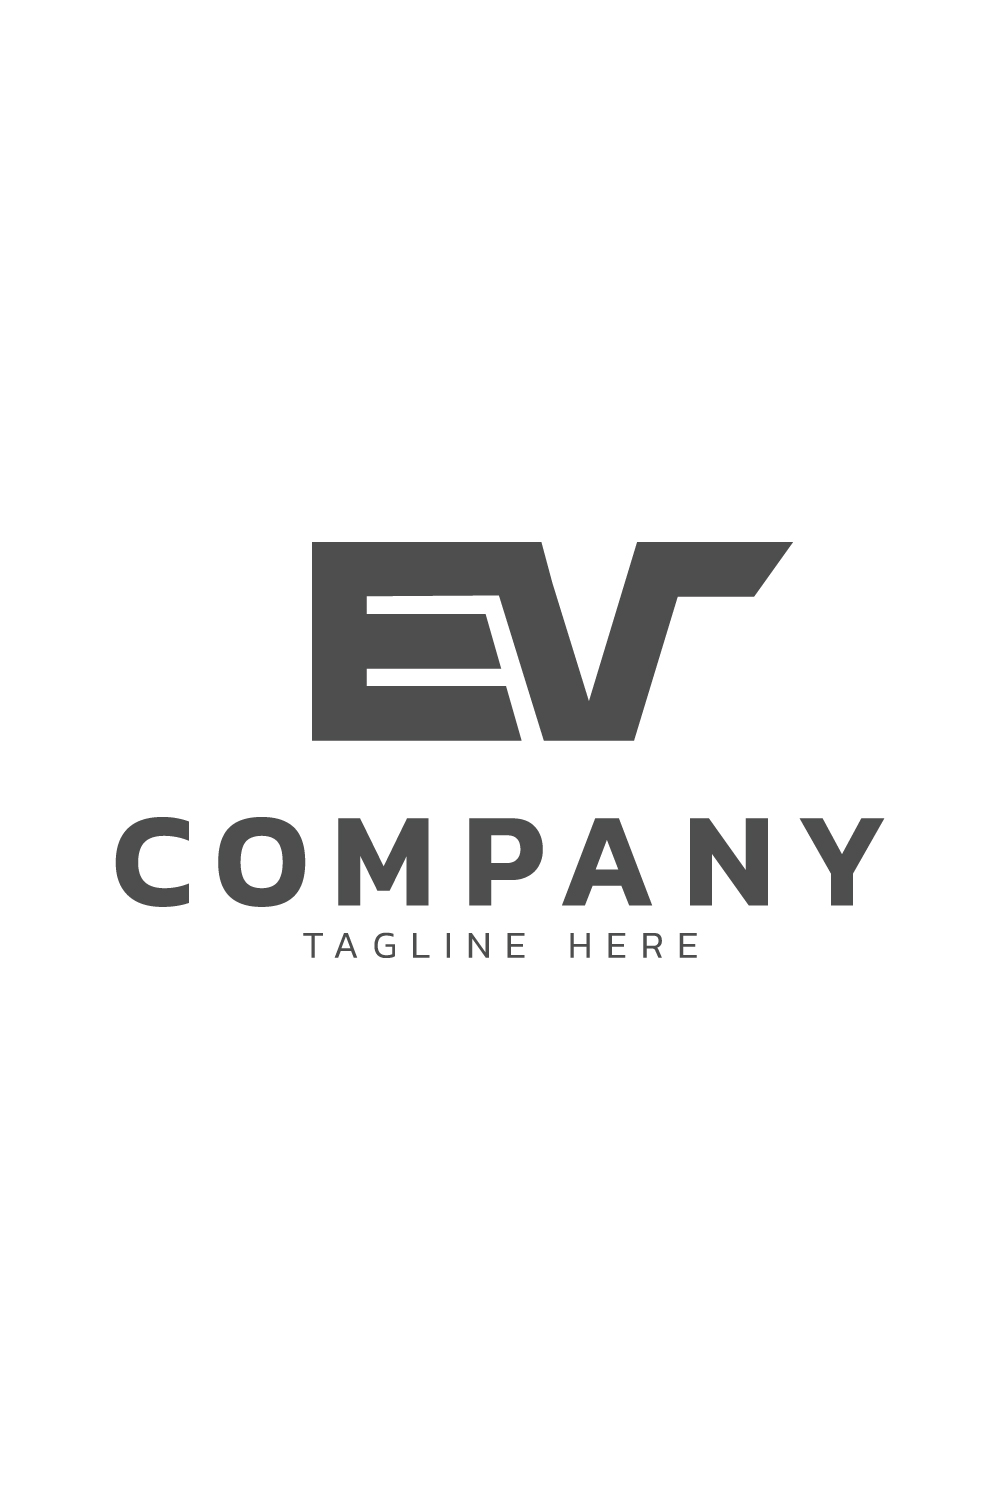 EV logo pinterest preview image.